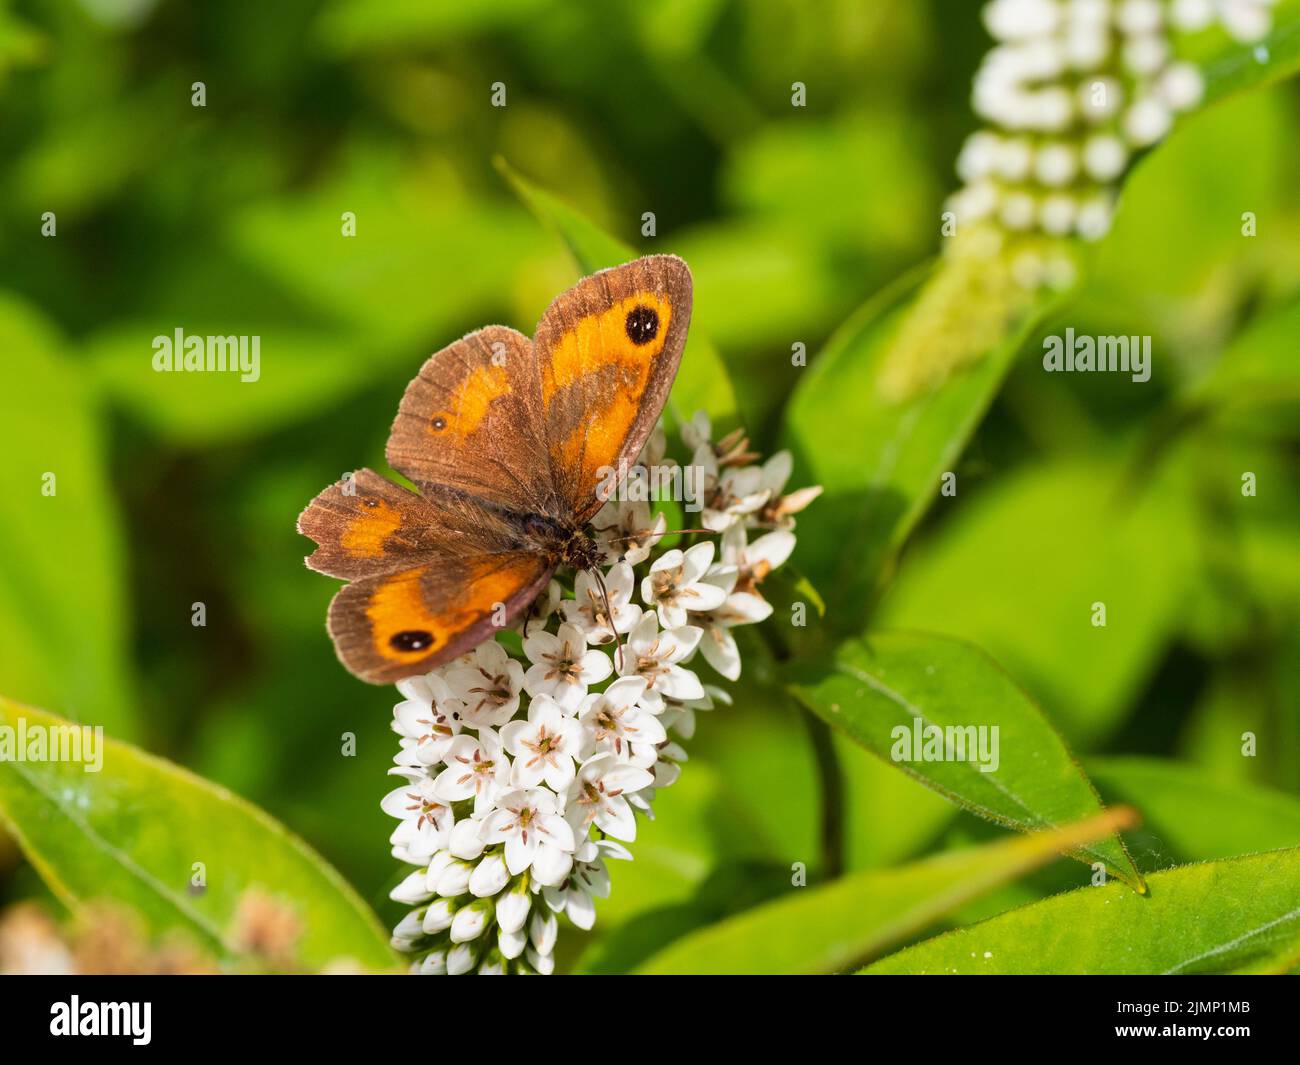 Später im Sommer fliegender Gatekeeper-Schmetterling, der sich von den Blüten der winterharten bprder-Staude Lysimachia clethroides ernährt Stockfoto